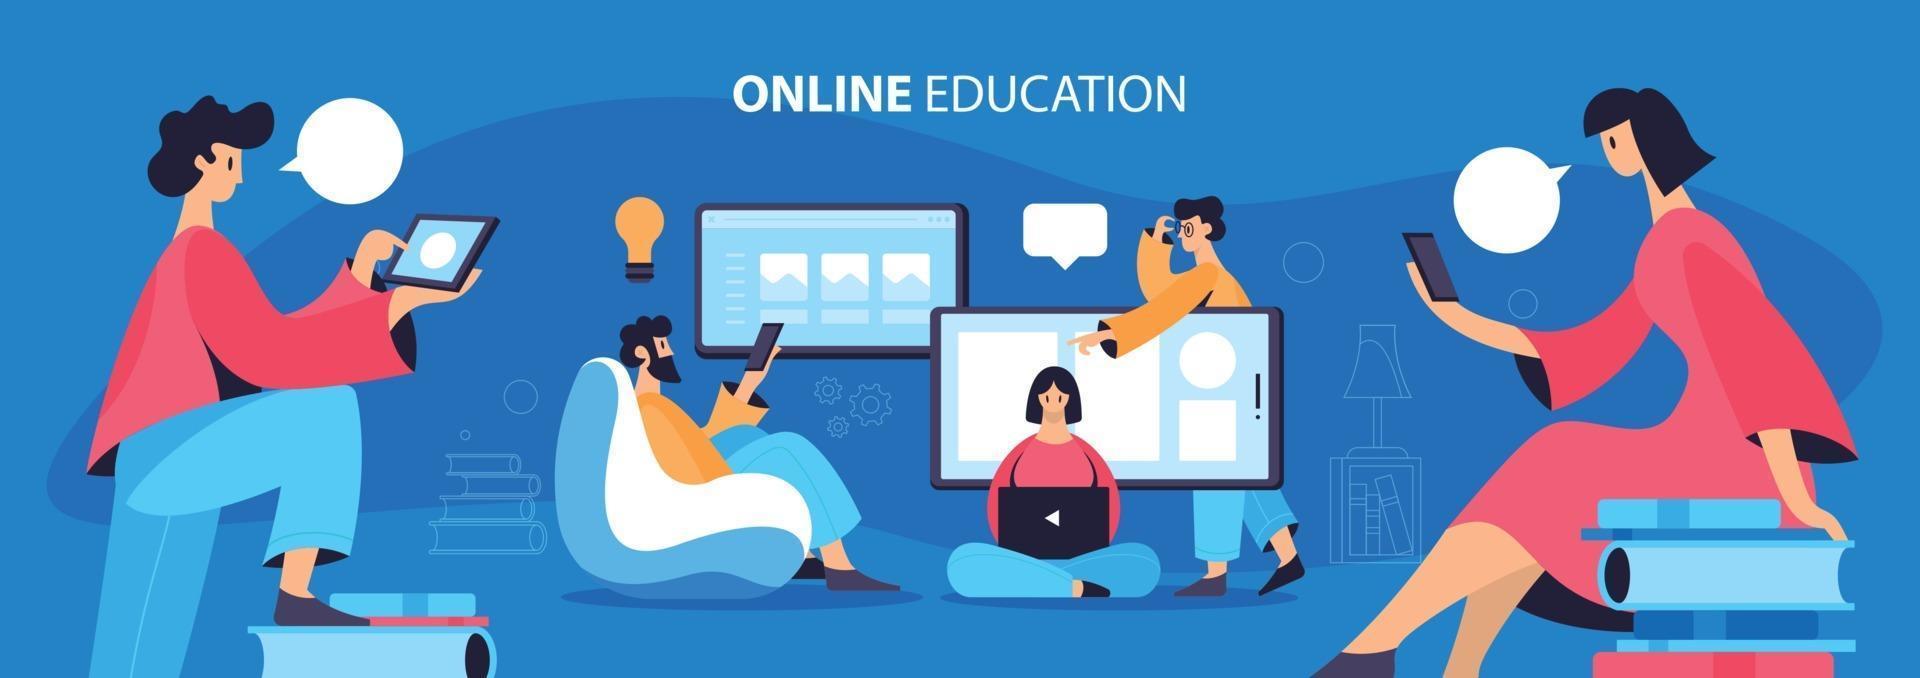 banner plano de educação online vetor